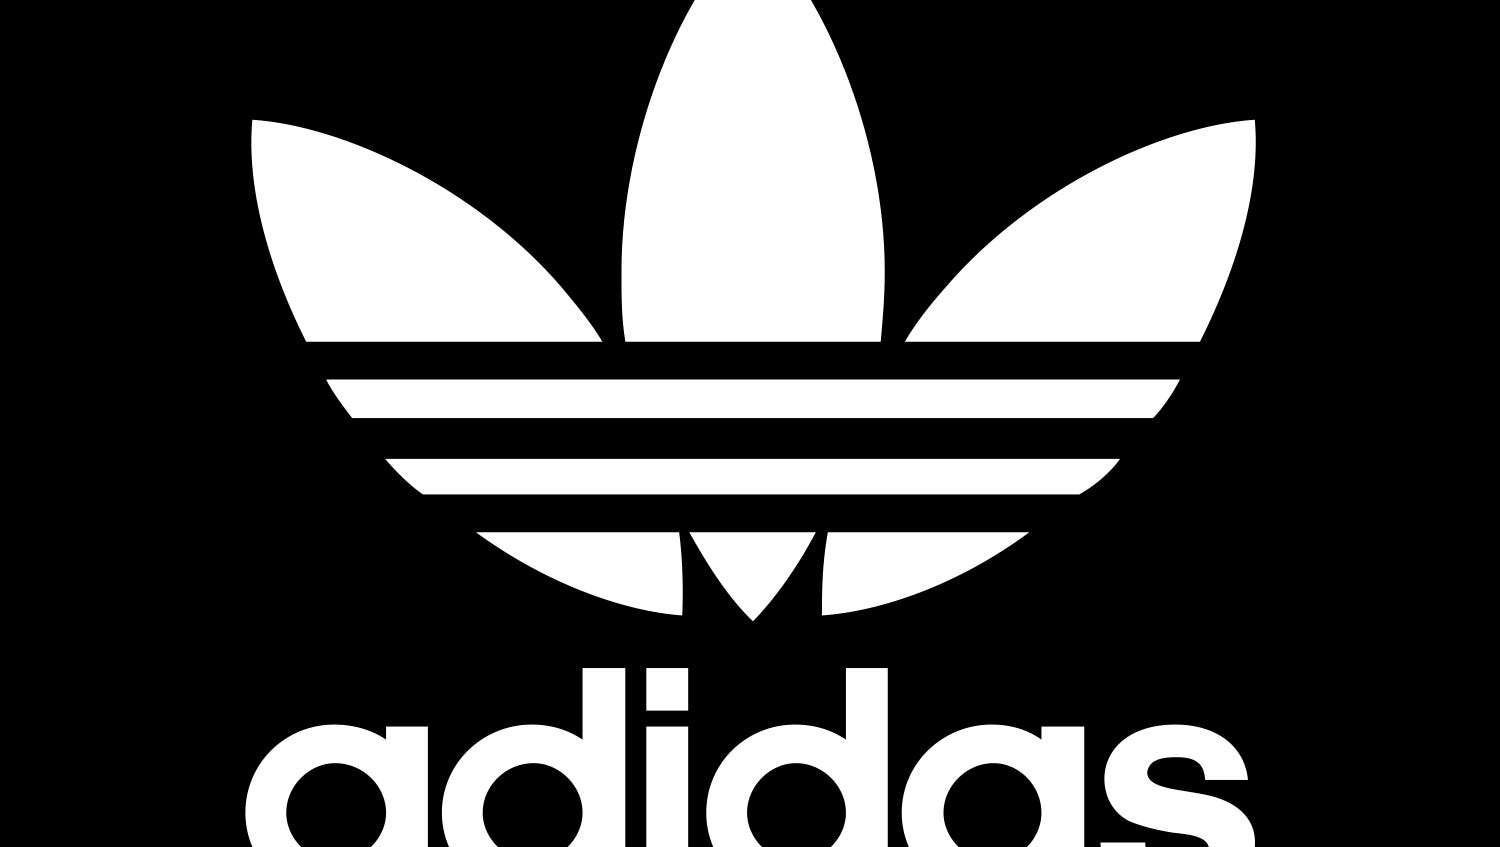 Работы адидас. Adidas logo. Abibas logo. Надпись адидас. Adidas фирменный знак.